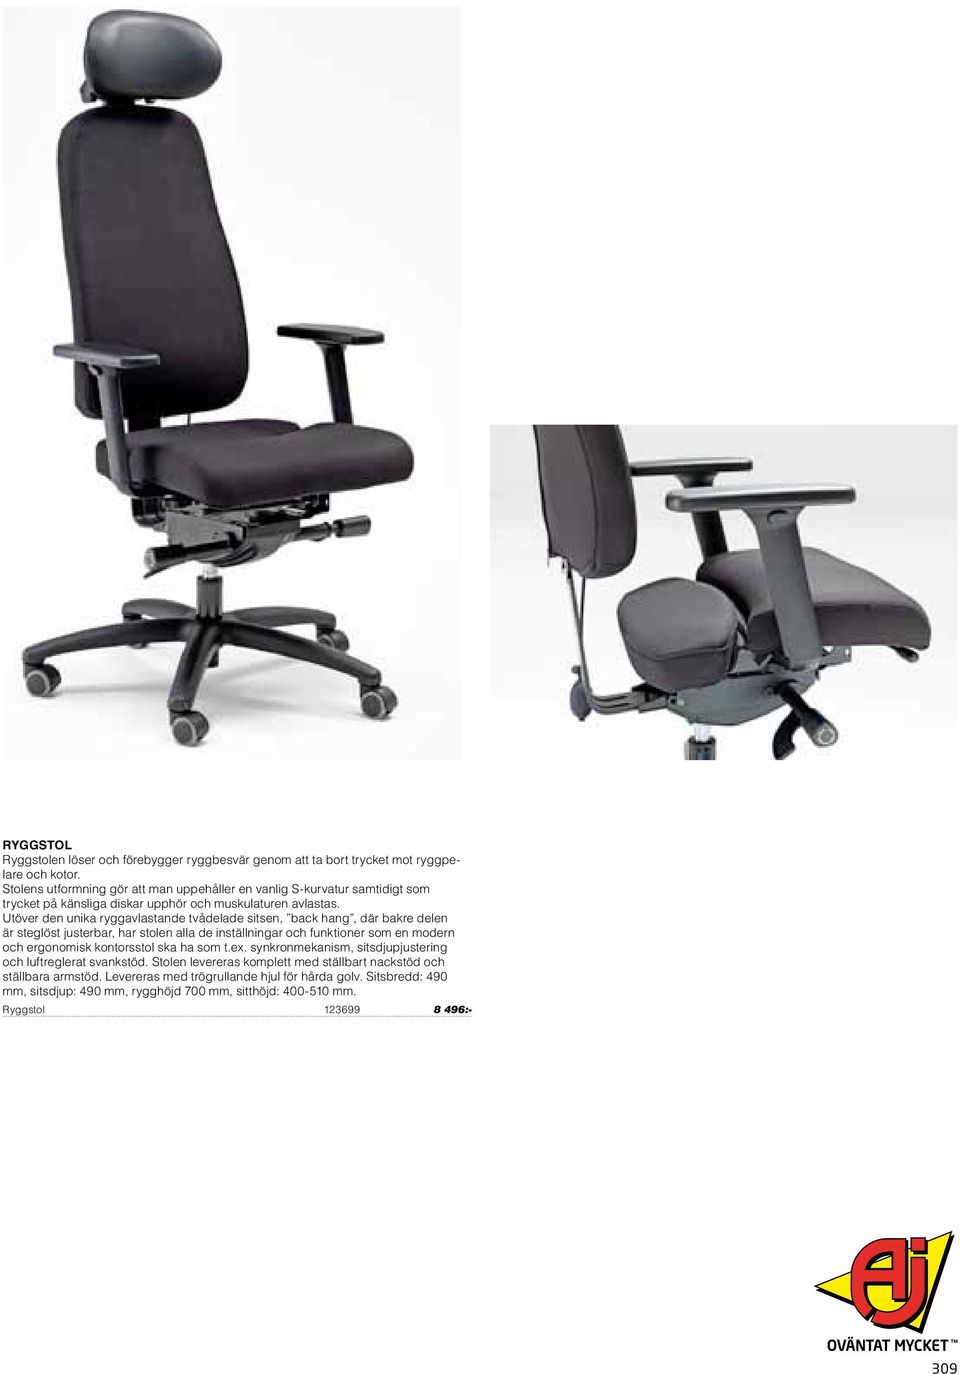 Utöver den unika ryggavlastande tvådelade sitsen, back hang, där bakre delen är steglöst justerbar, har stolen alla de inställningar och funktioner som en modern och ergonomisk